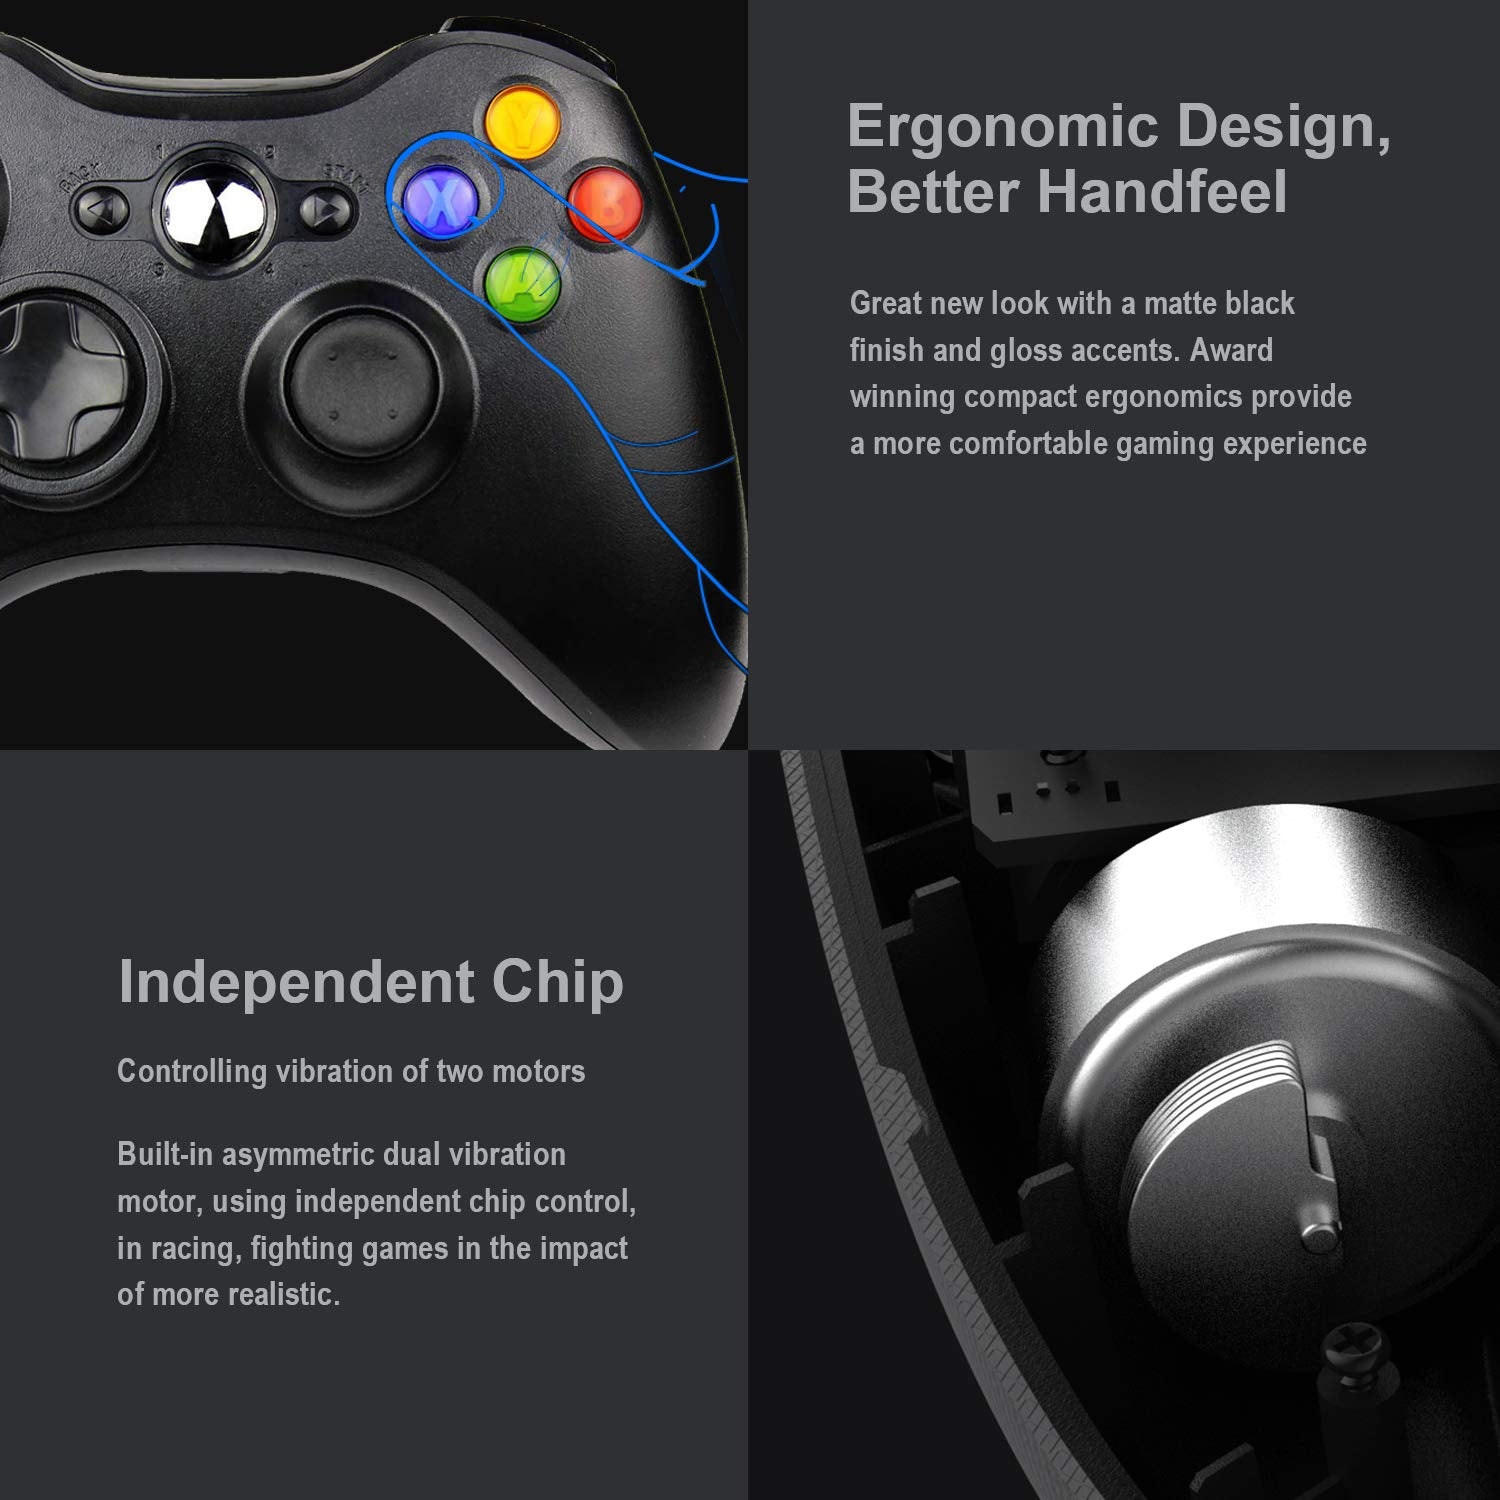 Xbox 360 Controllers Wireless, Wireless Xbox 360 Controls